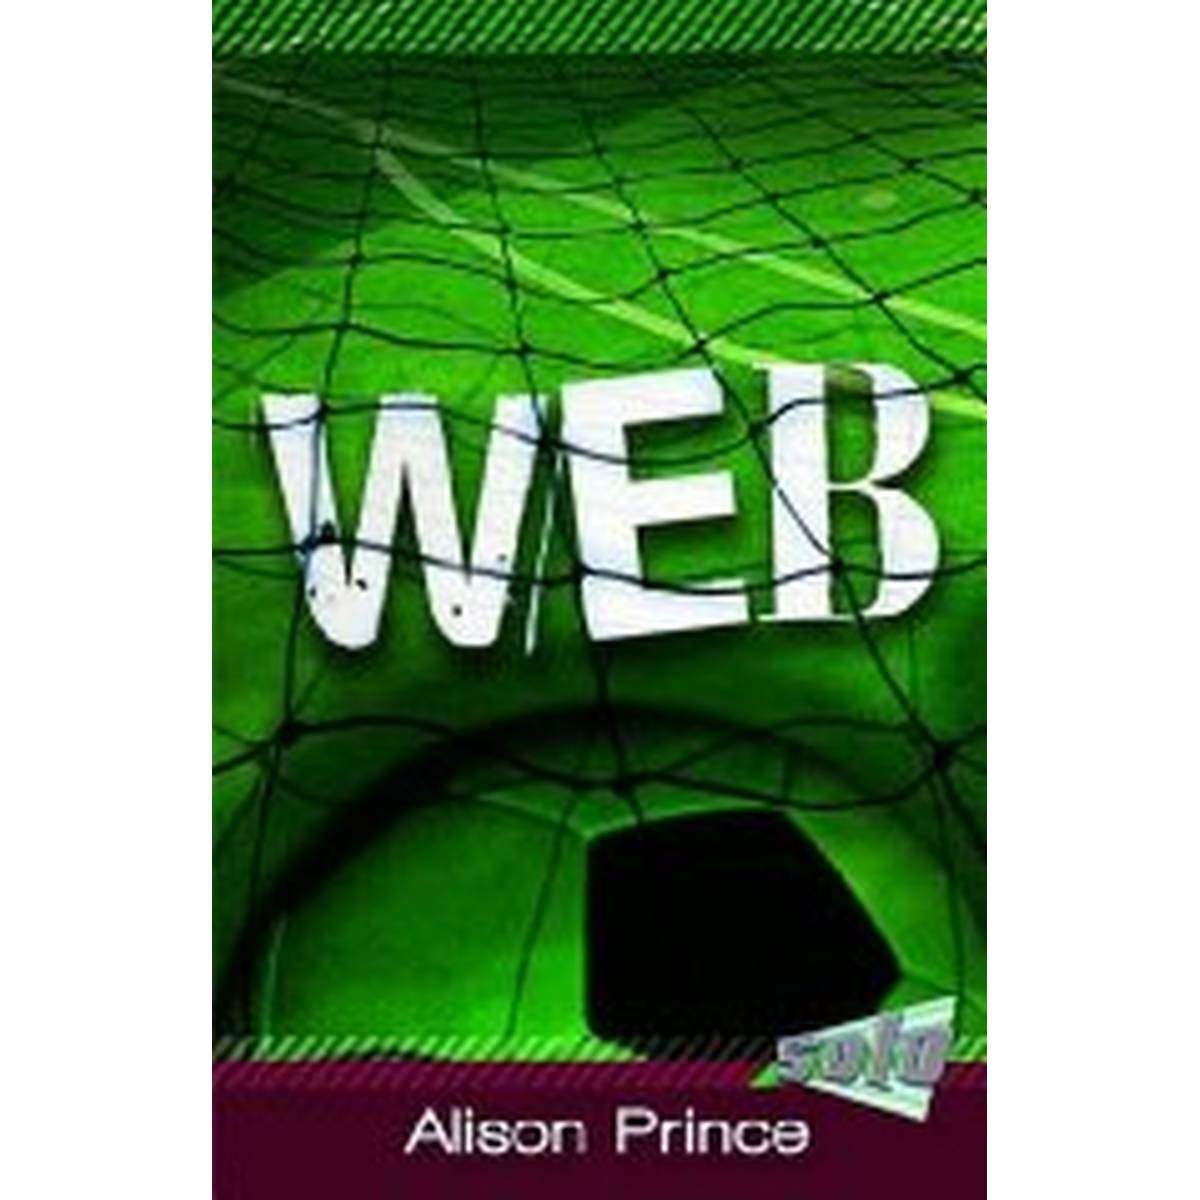 Web (Solo)